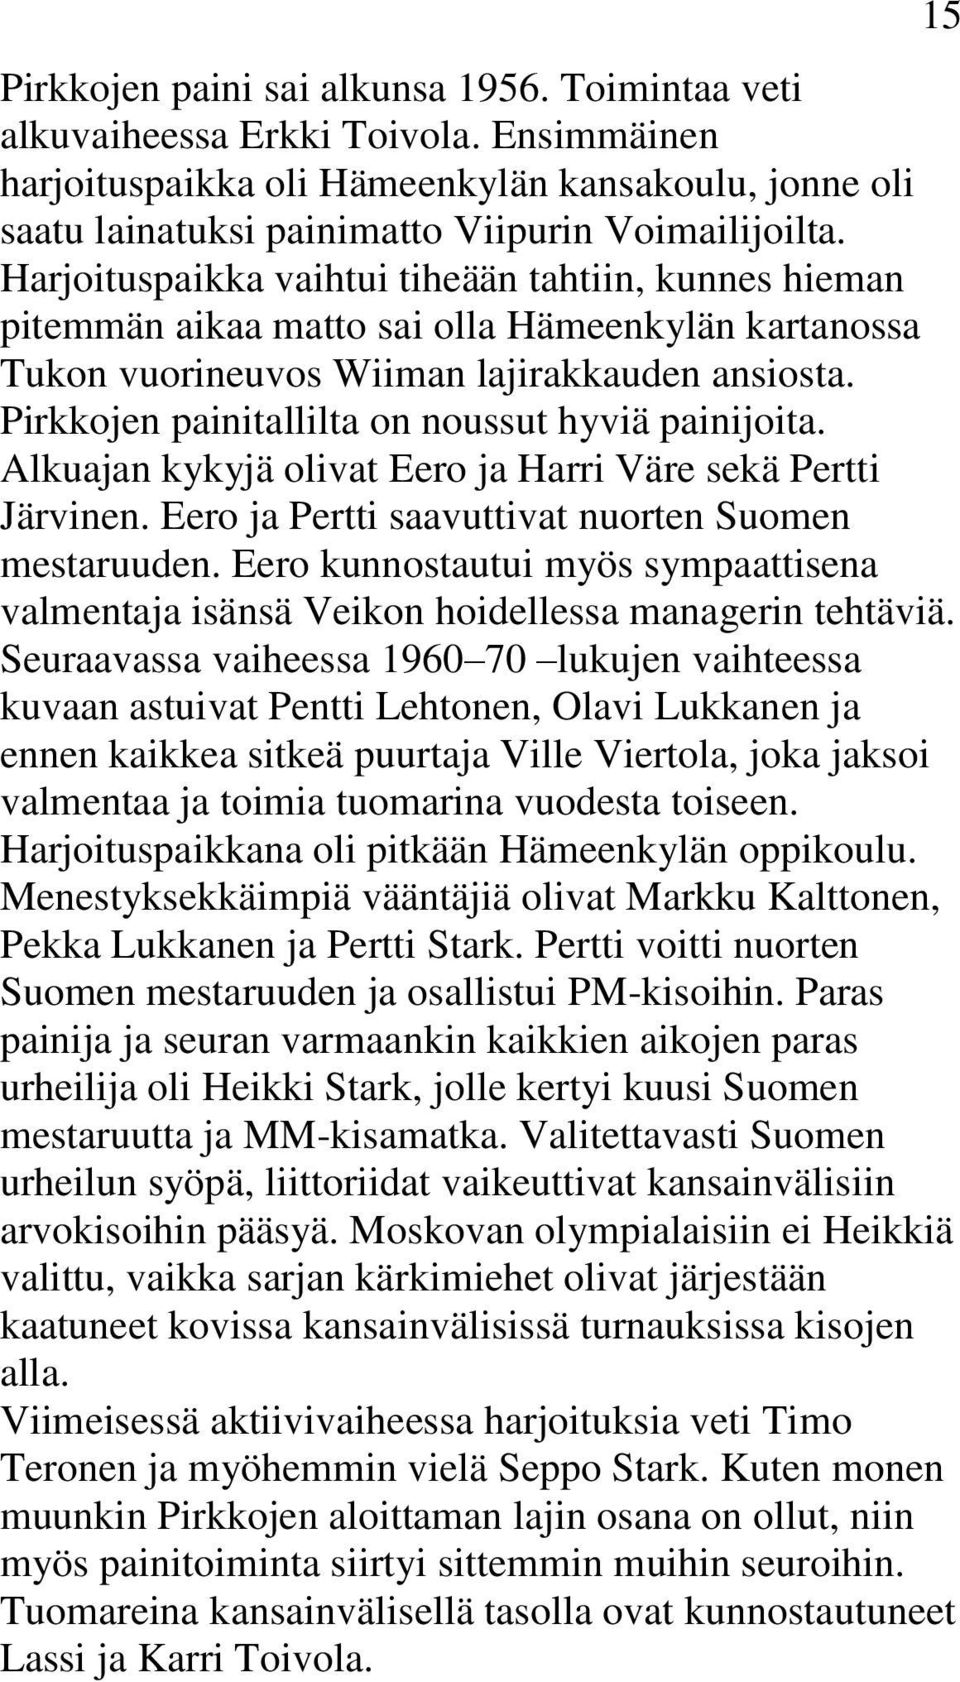 Pirkkojen painitallilta on noussut hyviä painijoita. Alkuajan kykyjä olivat Eero ja Harri Väre sekä Pertti Järvinen. Eero ja Pertti saavuttivat nuorten Suomen mestaruuden.